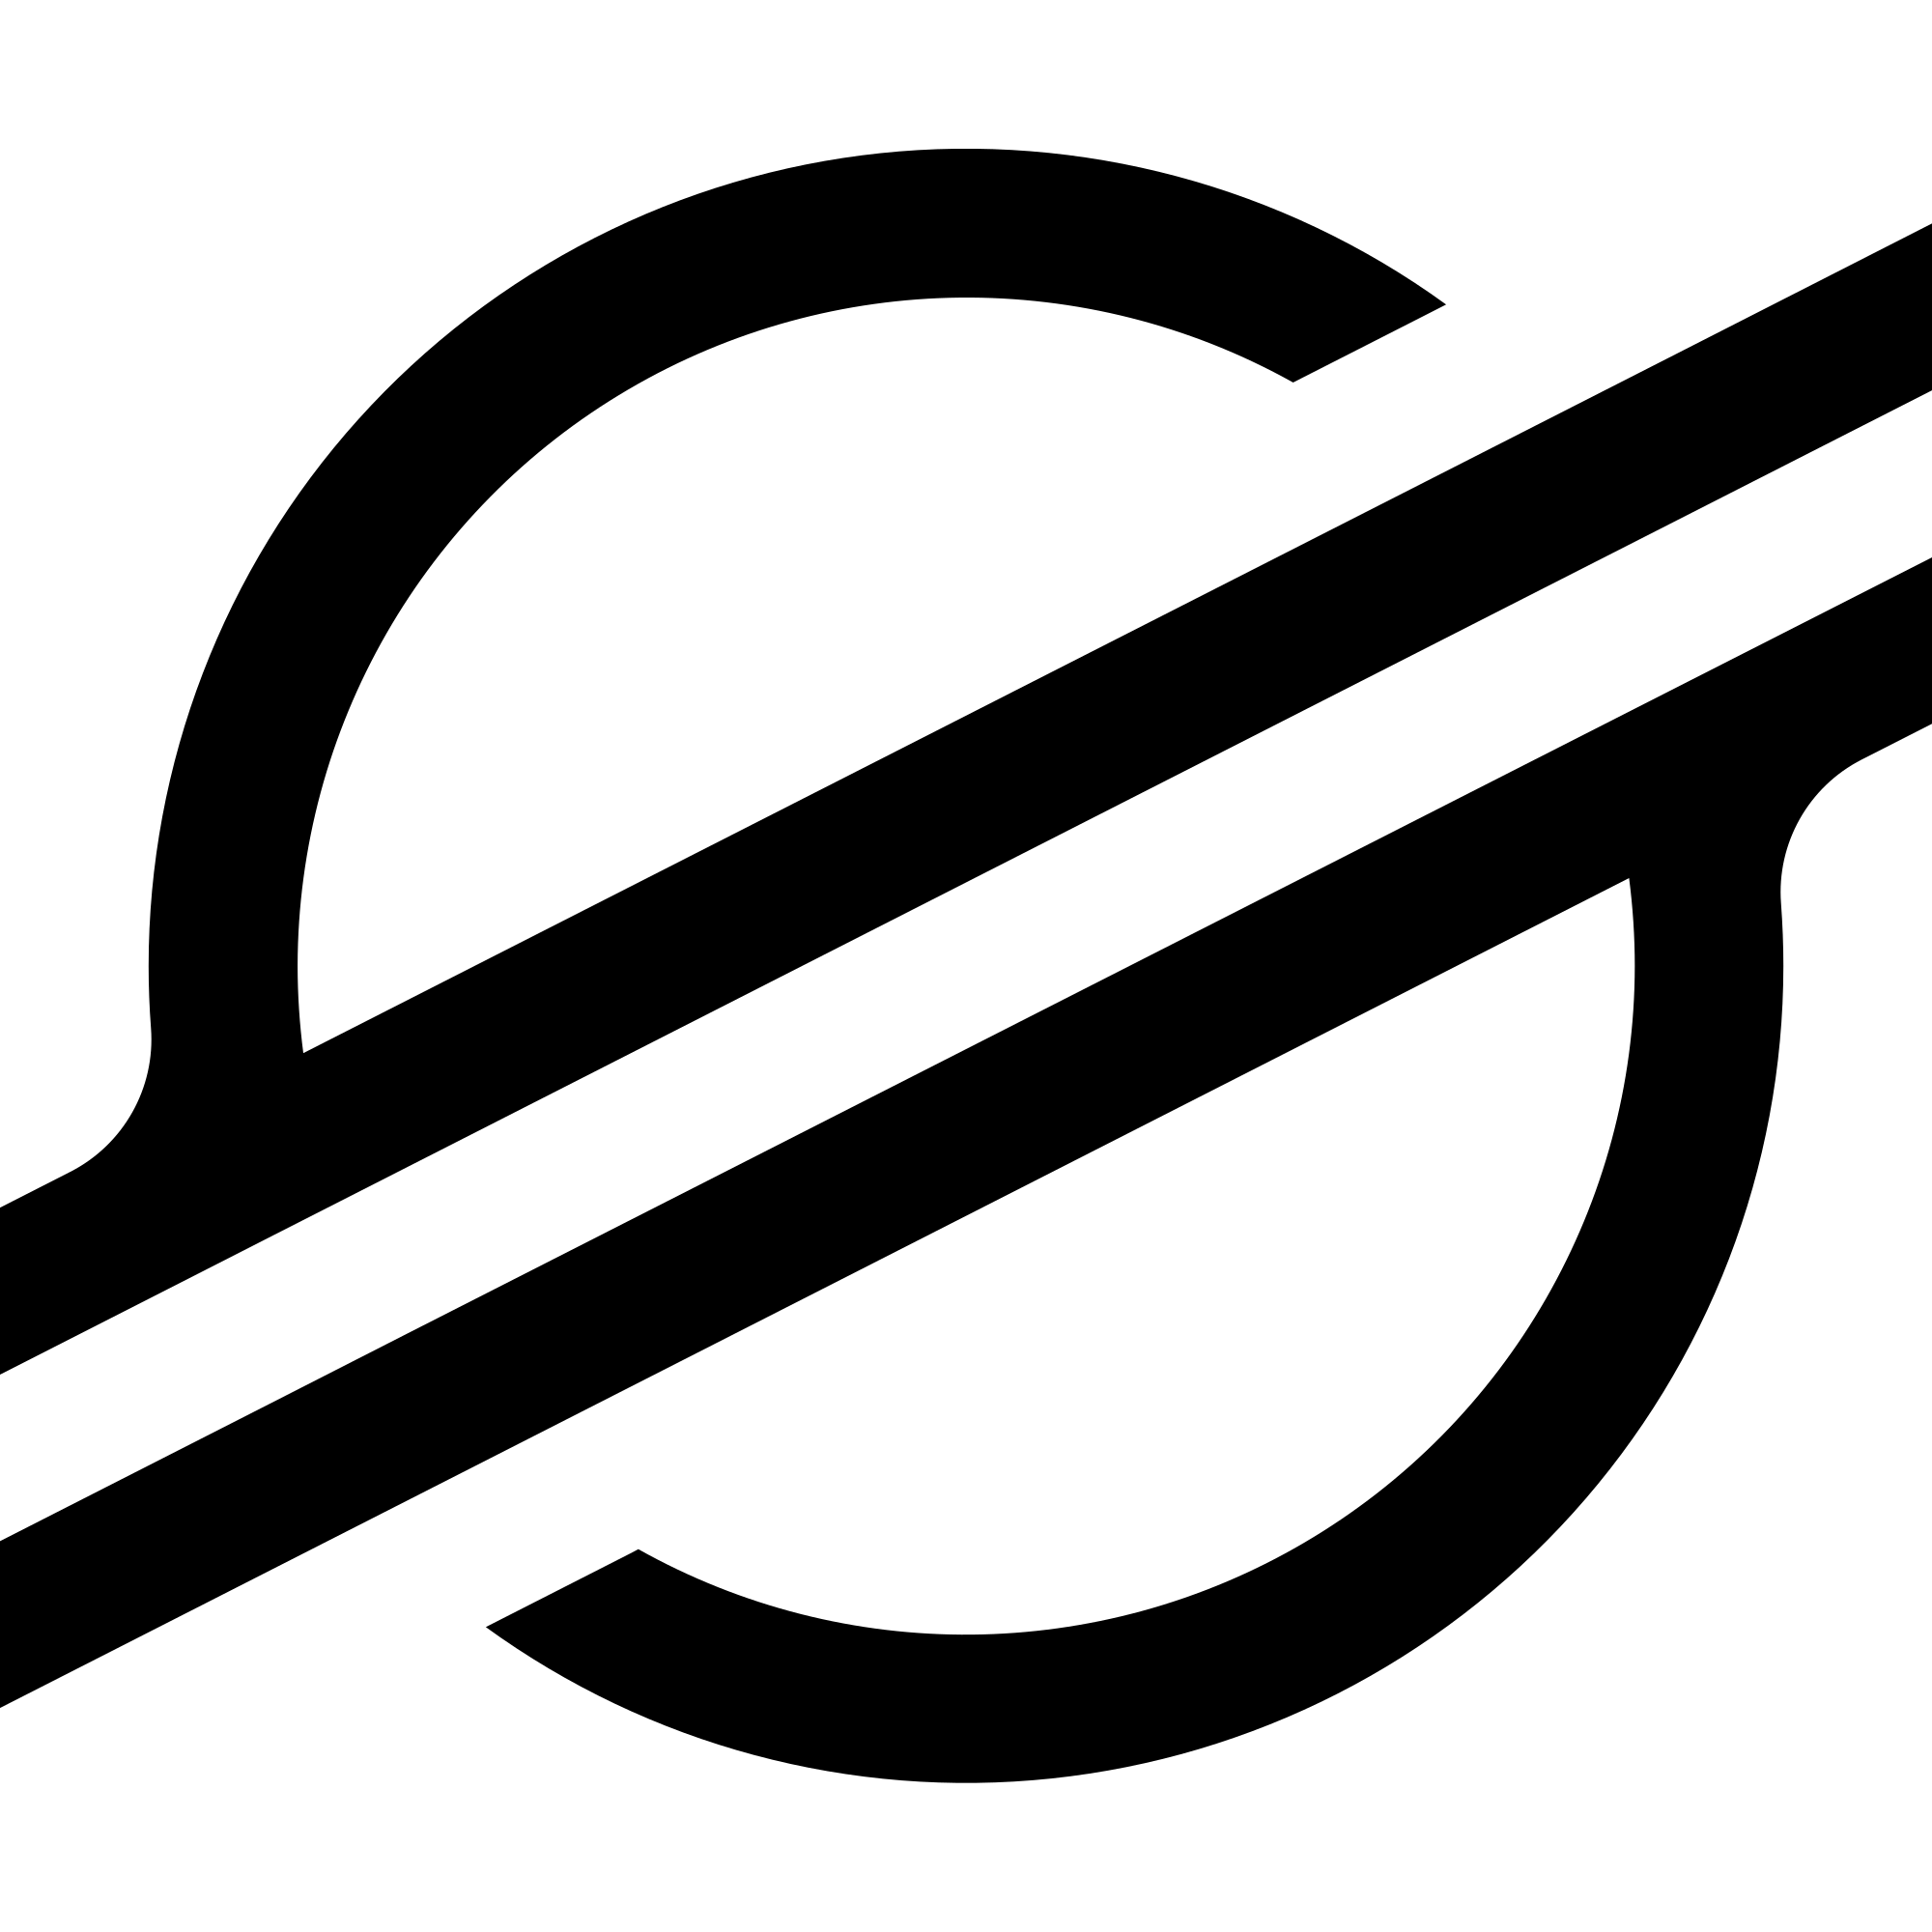 Tải xuống tệp Logo Stellar (XLM) .SVG và .PNG